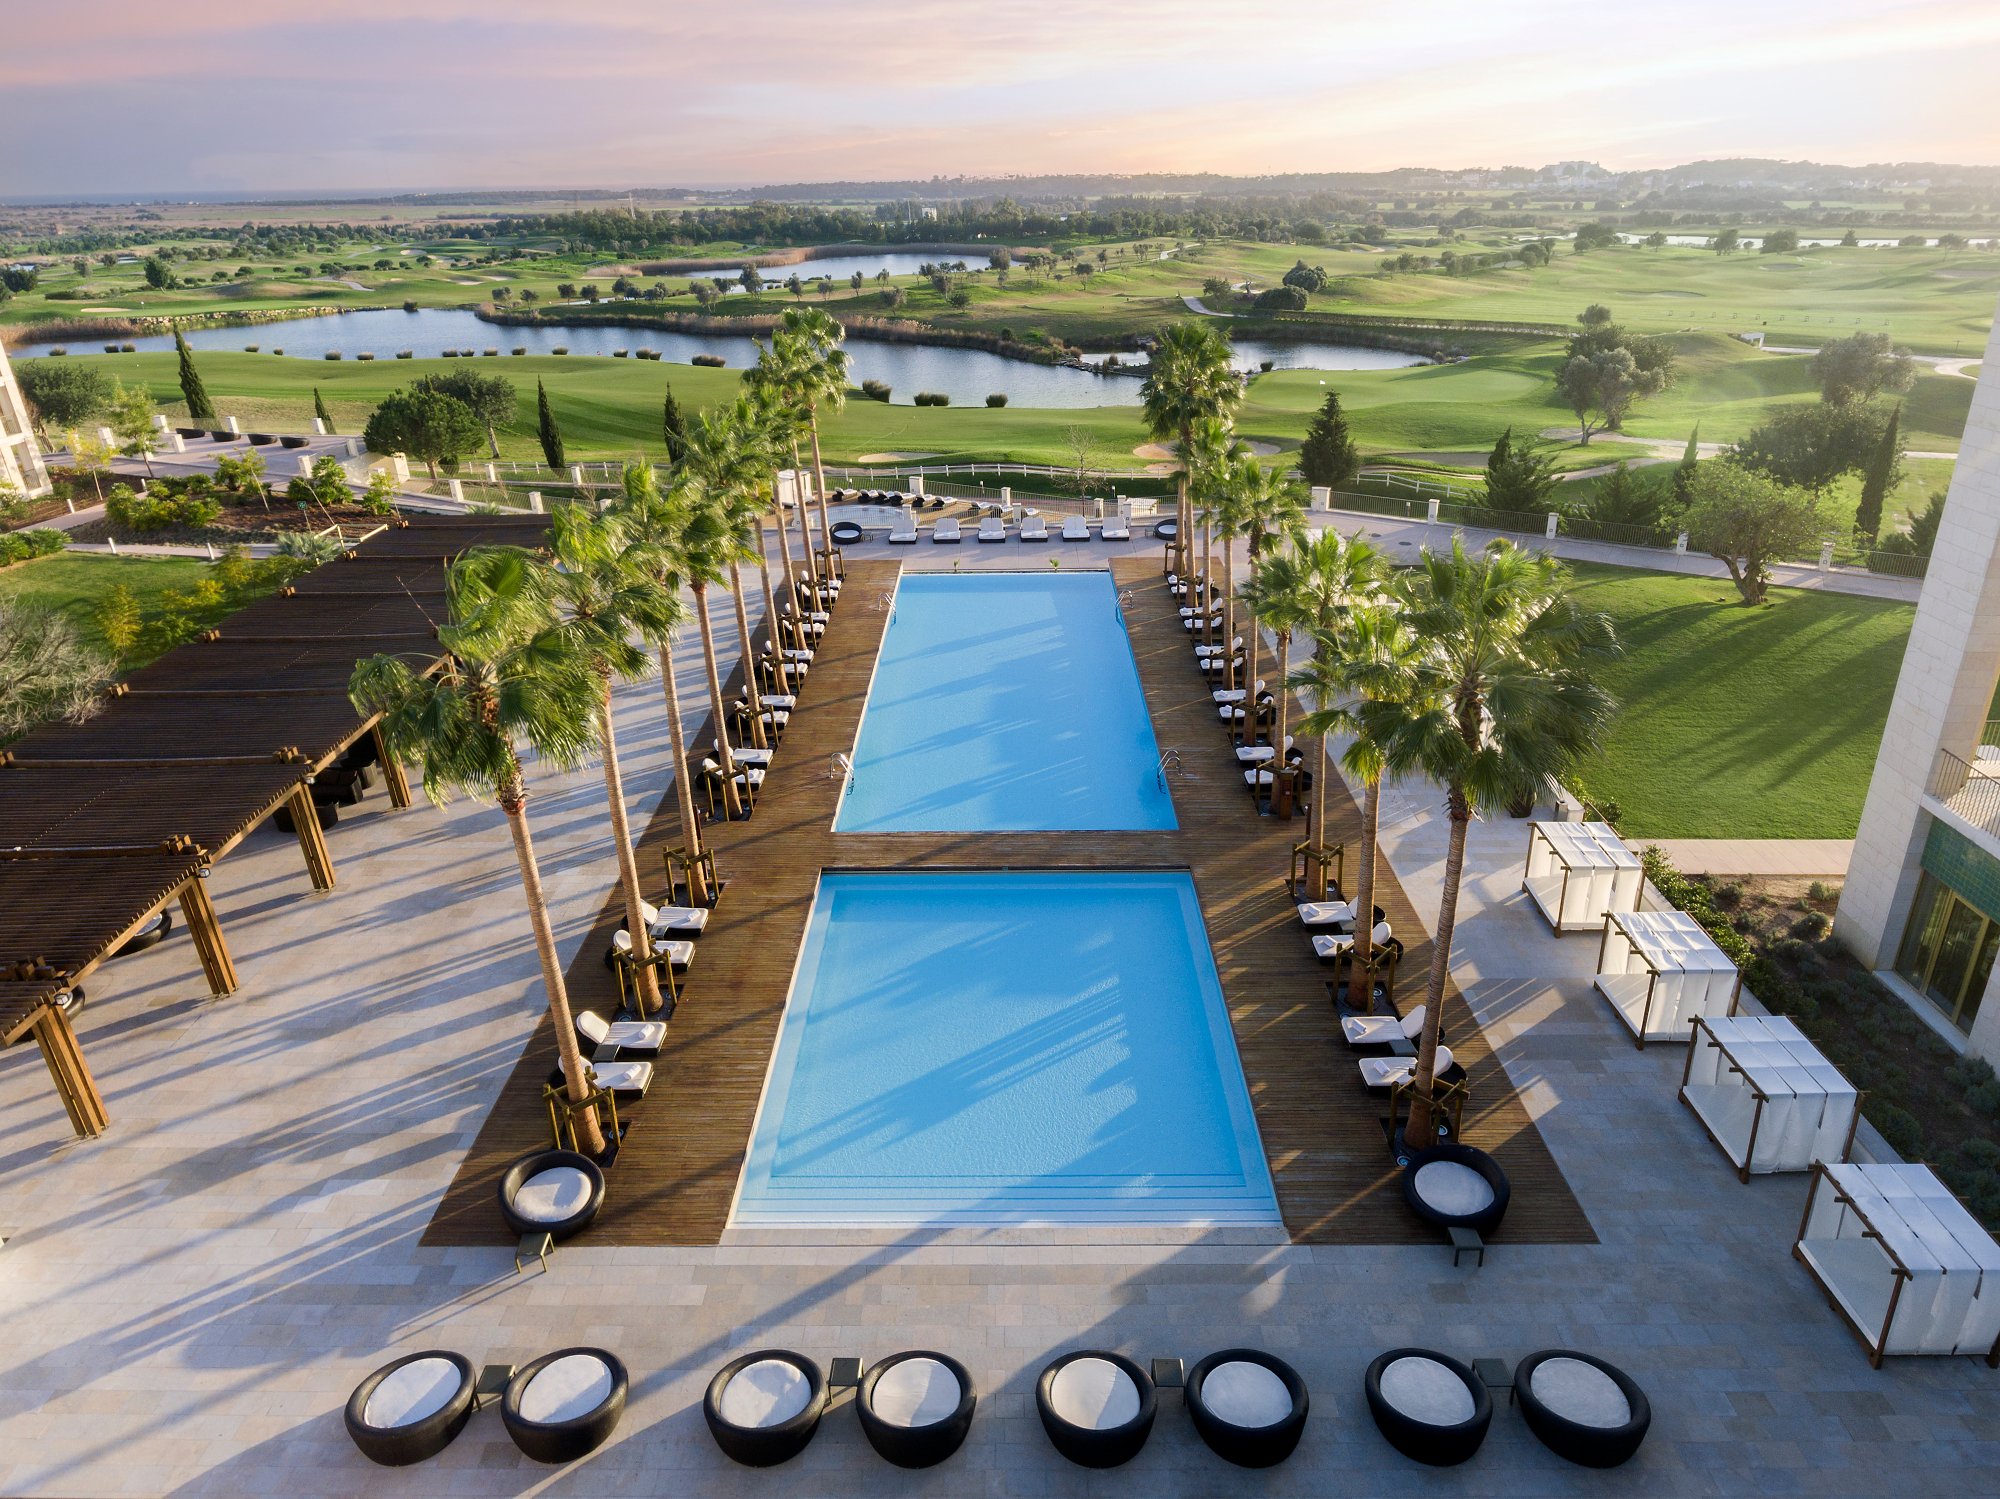 Anantara Vilamoura Algarve  Resort located in Portugal